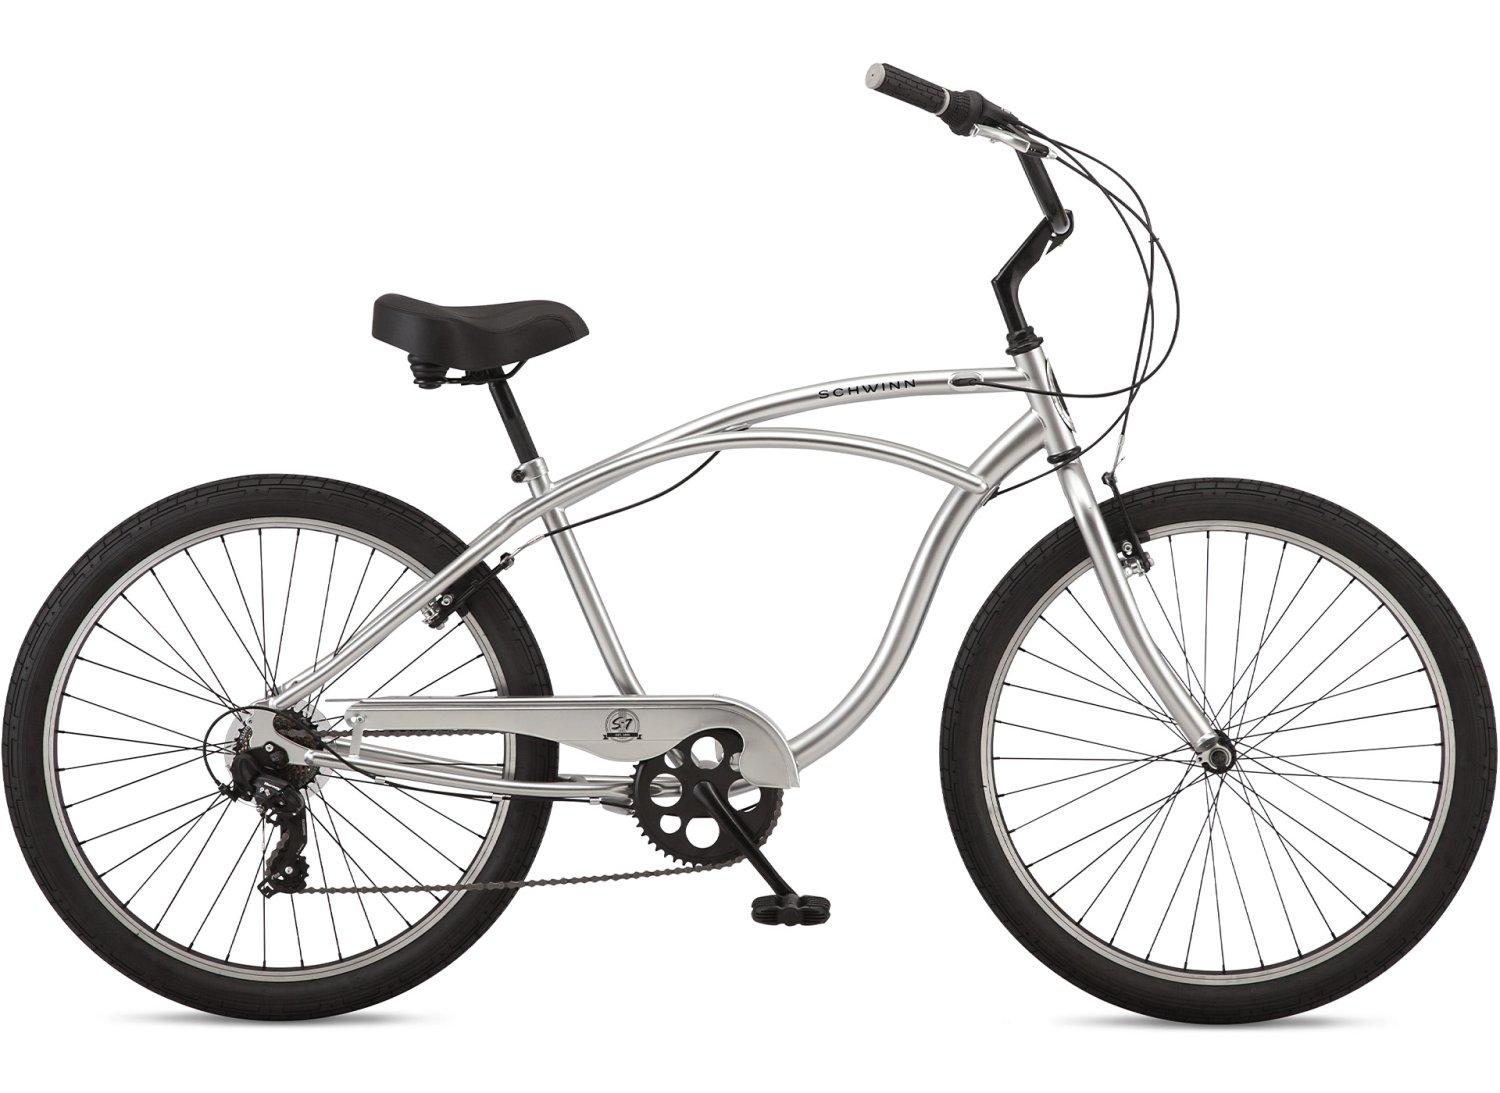 Городской велосипед SCHWINN S7 SLV, 7 скоростей, серый, S39851M20OS миксер moulinex hm464110 стационарный 500 вт 5 скоростей 4 насадки бело серый